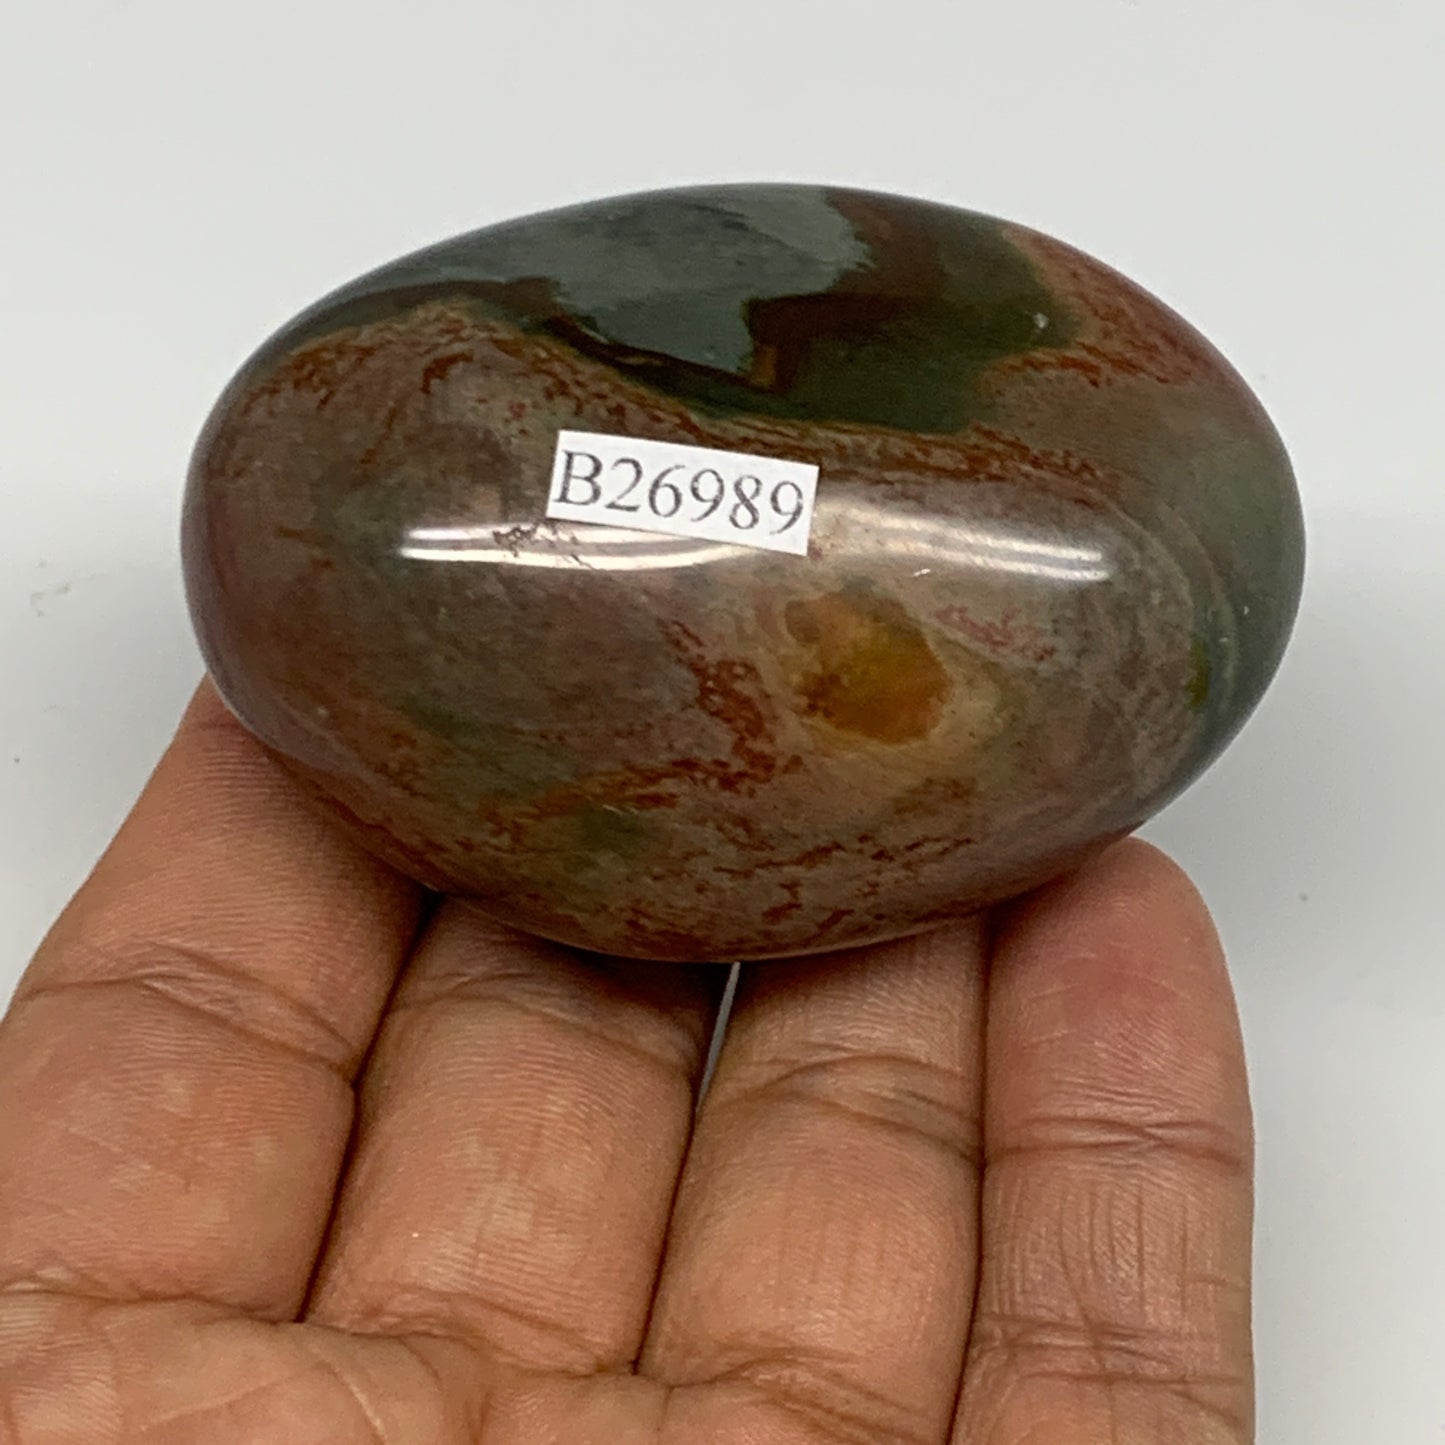 108.6g, 2.5"x1.8"x1.2", Polychrome Jasper Palm-Stone Reiki @Madagascar, B26989